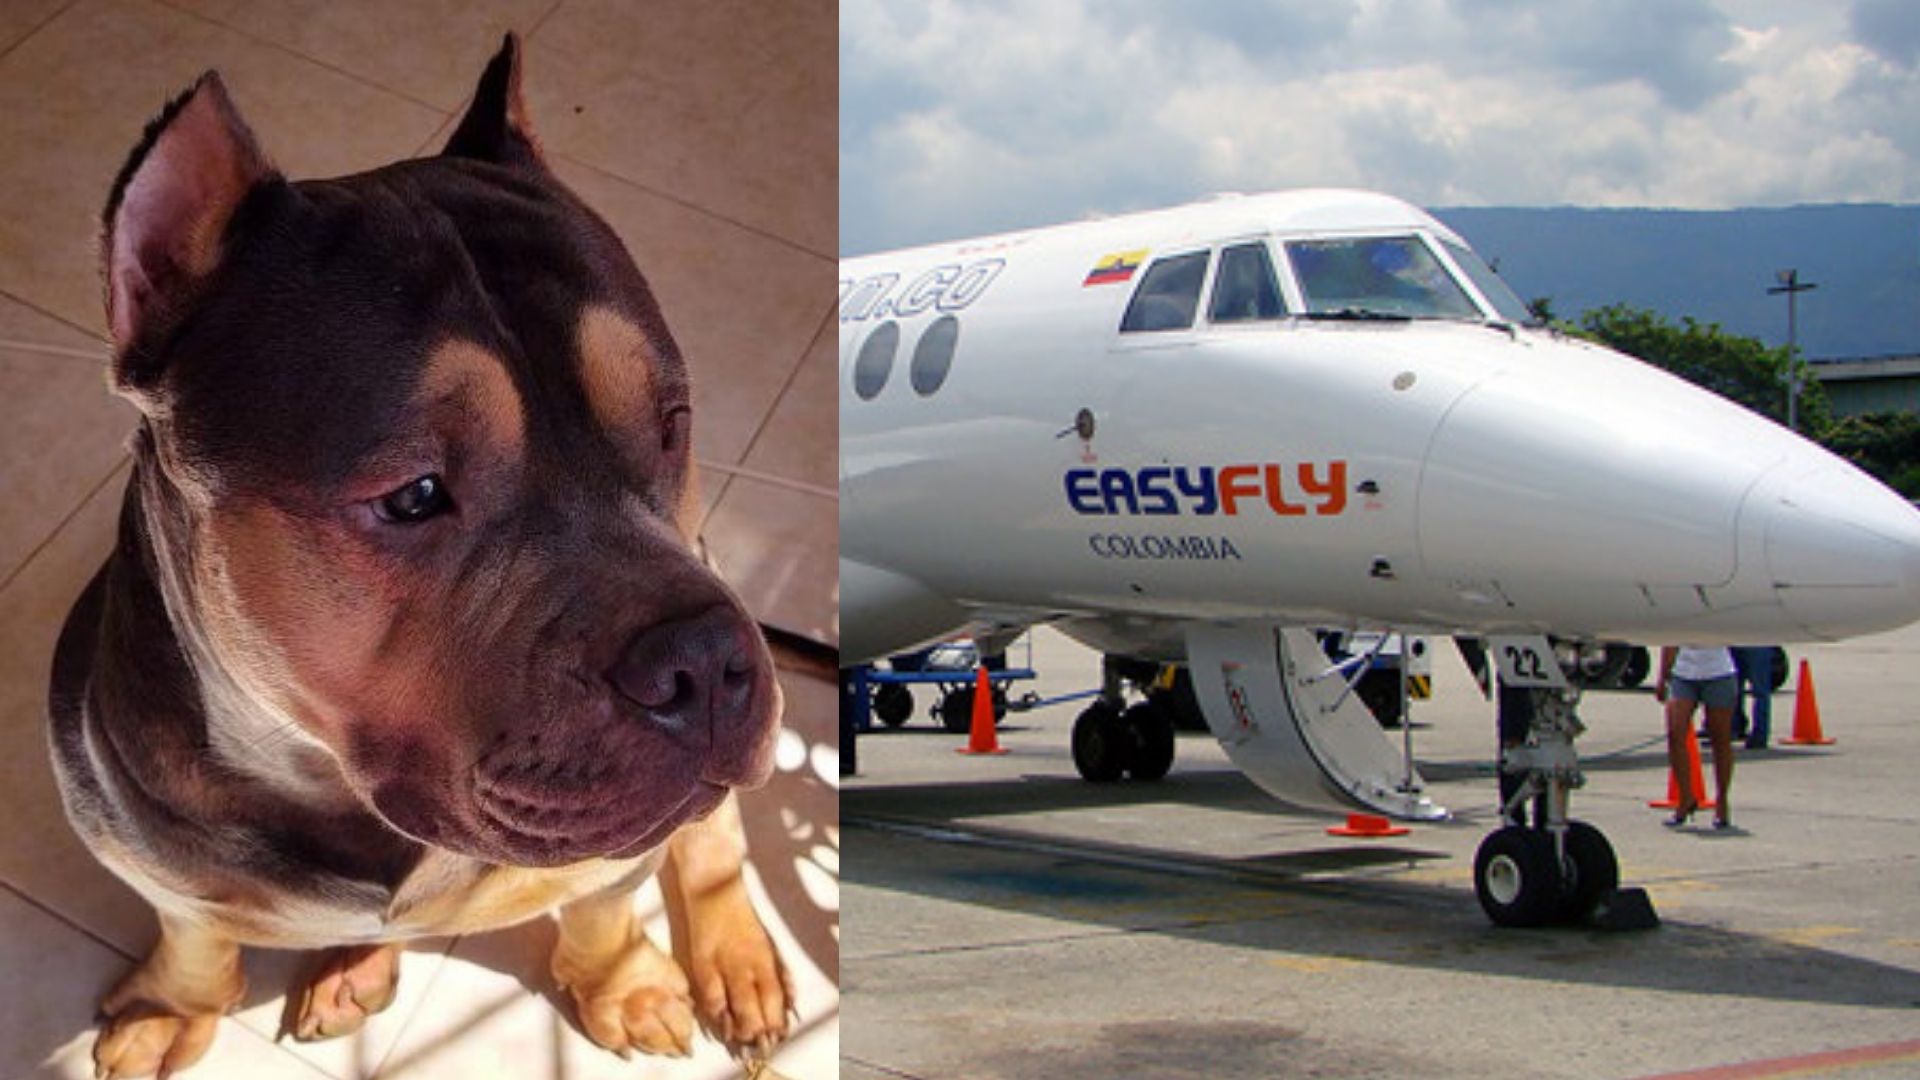 Easyfly recibió millonaria multa por muerte de perro Homero en la bodega de uno de sus aviones